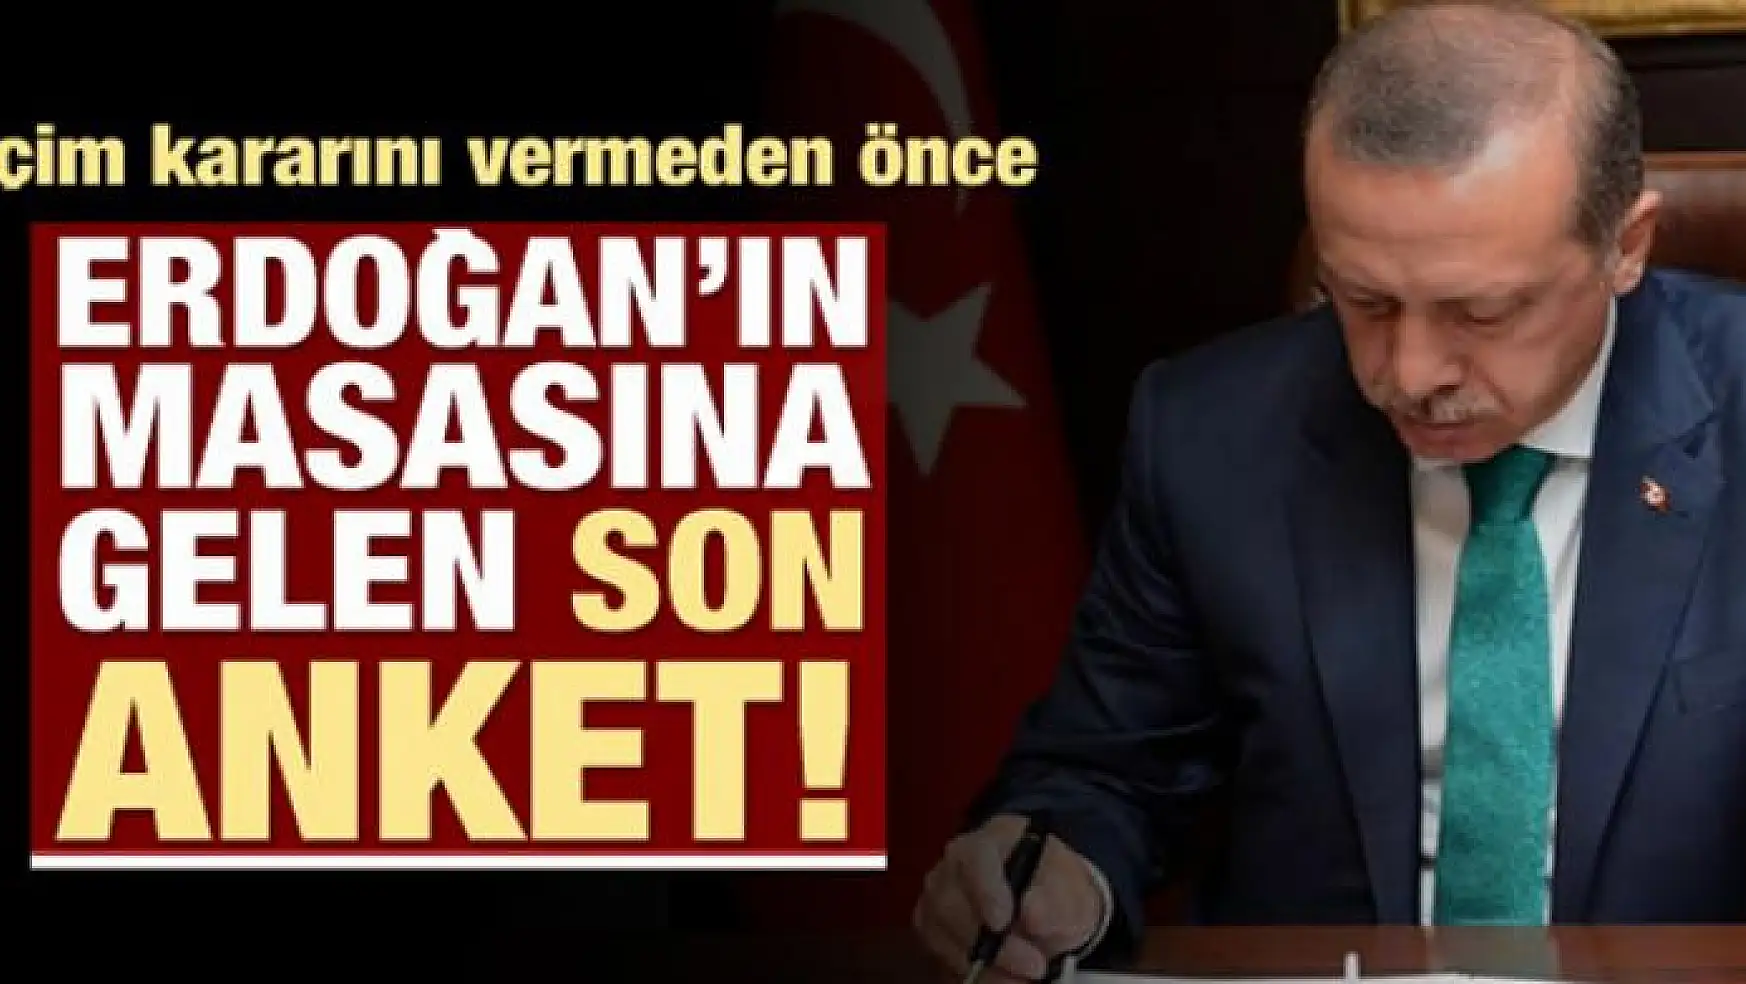 İşte Erdoğan'ın masasındaki son anket!